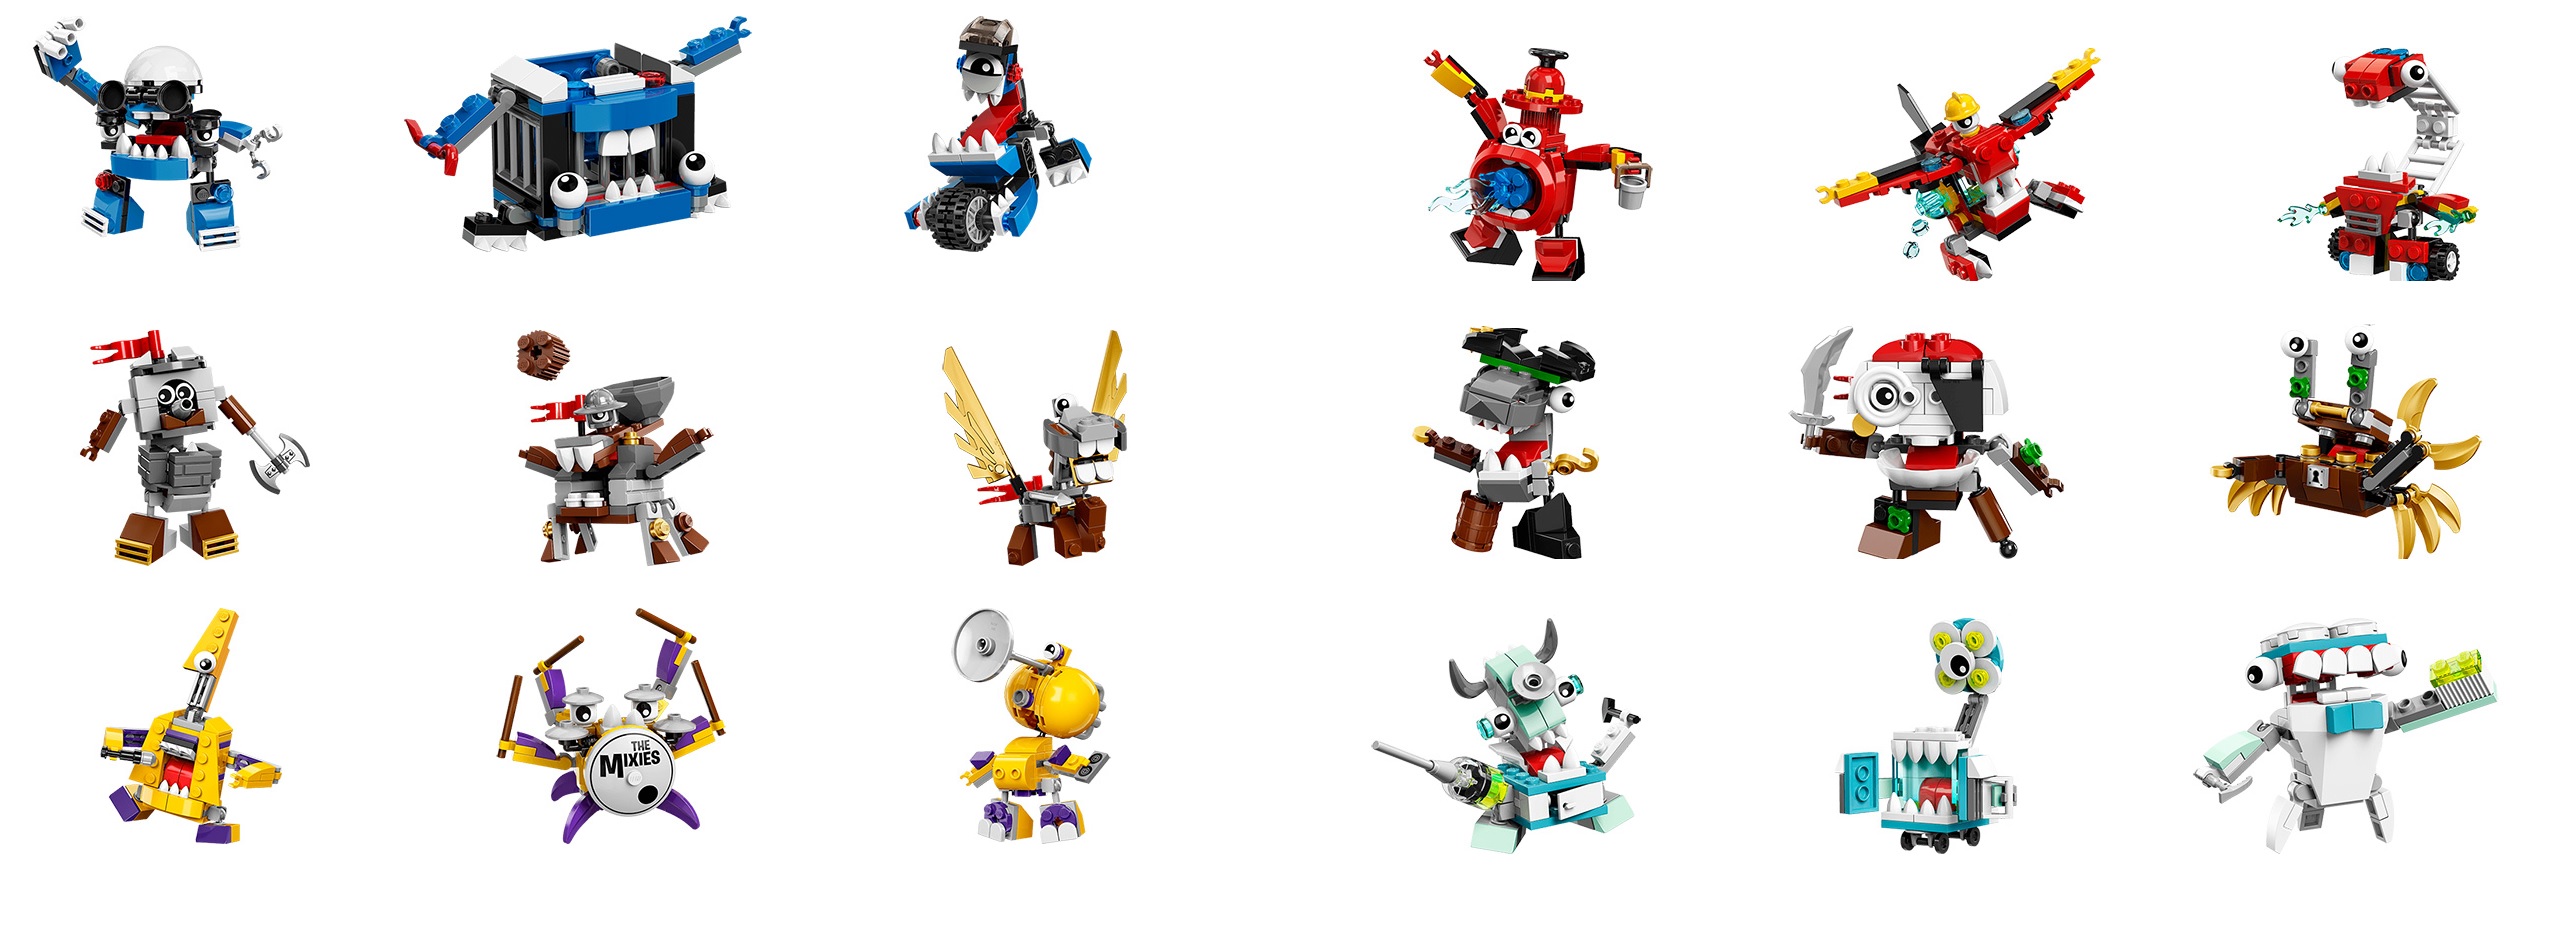 2016-LEGO-Mixels-Series-6-Set-Images-41554-41555-41556-41557-41558-41559-41560-41561-41562.jpg